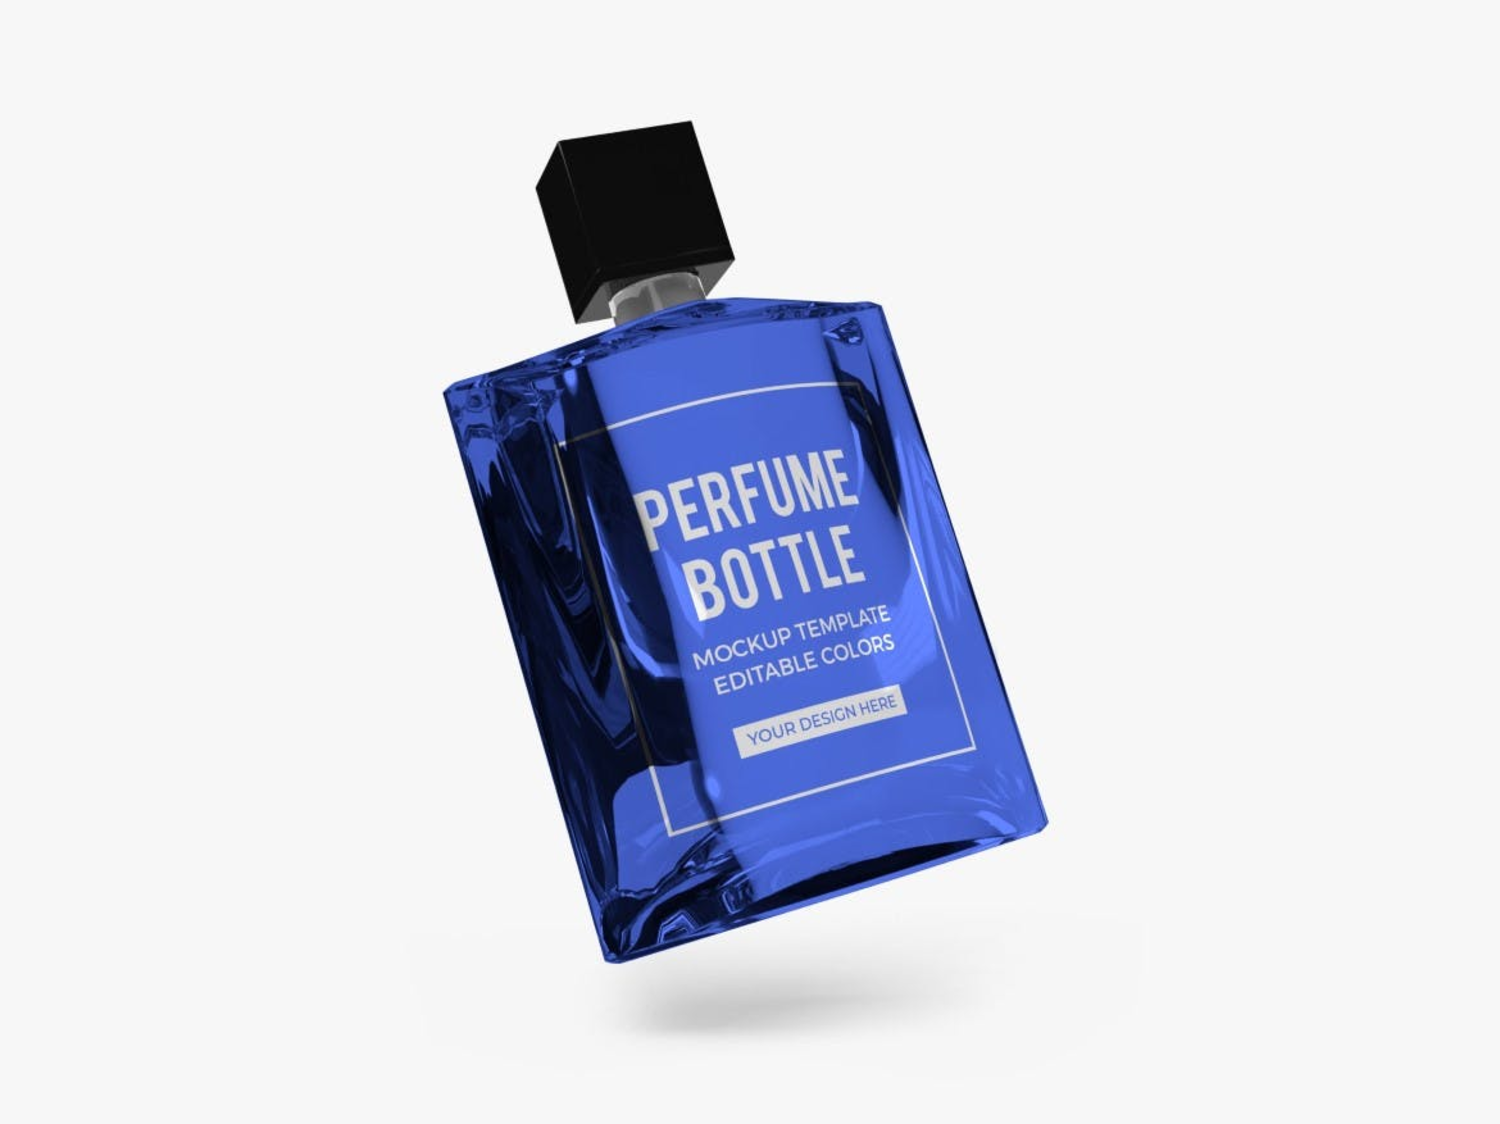 14 蓝色高端香水瓶玻璃模型PS样机 (PSD)